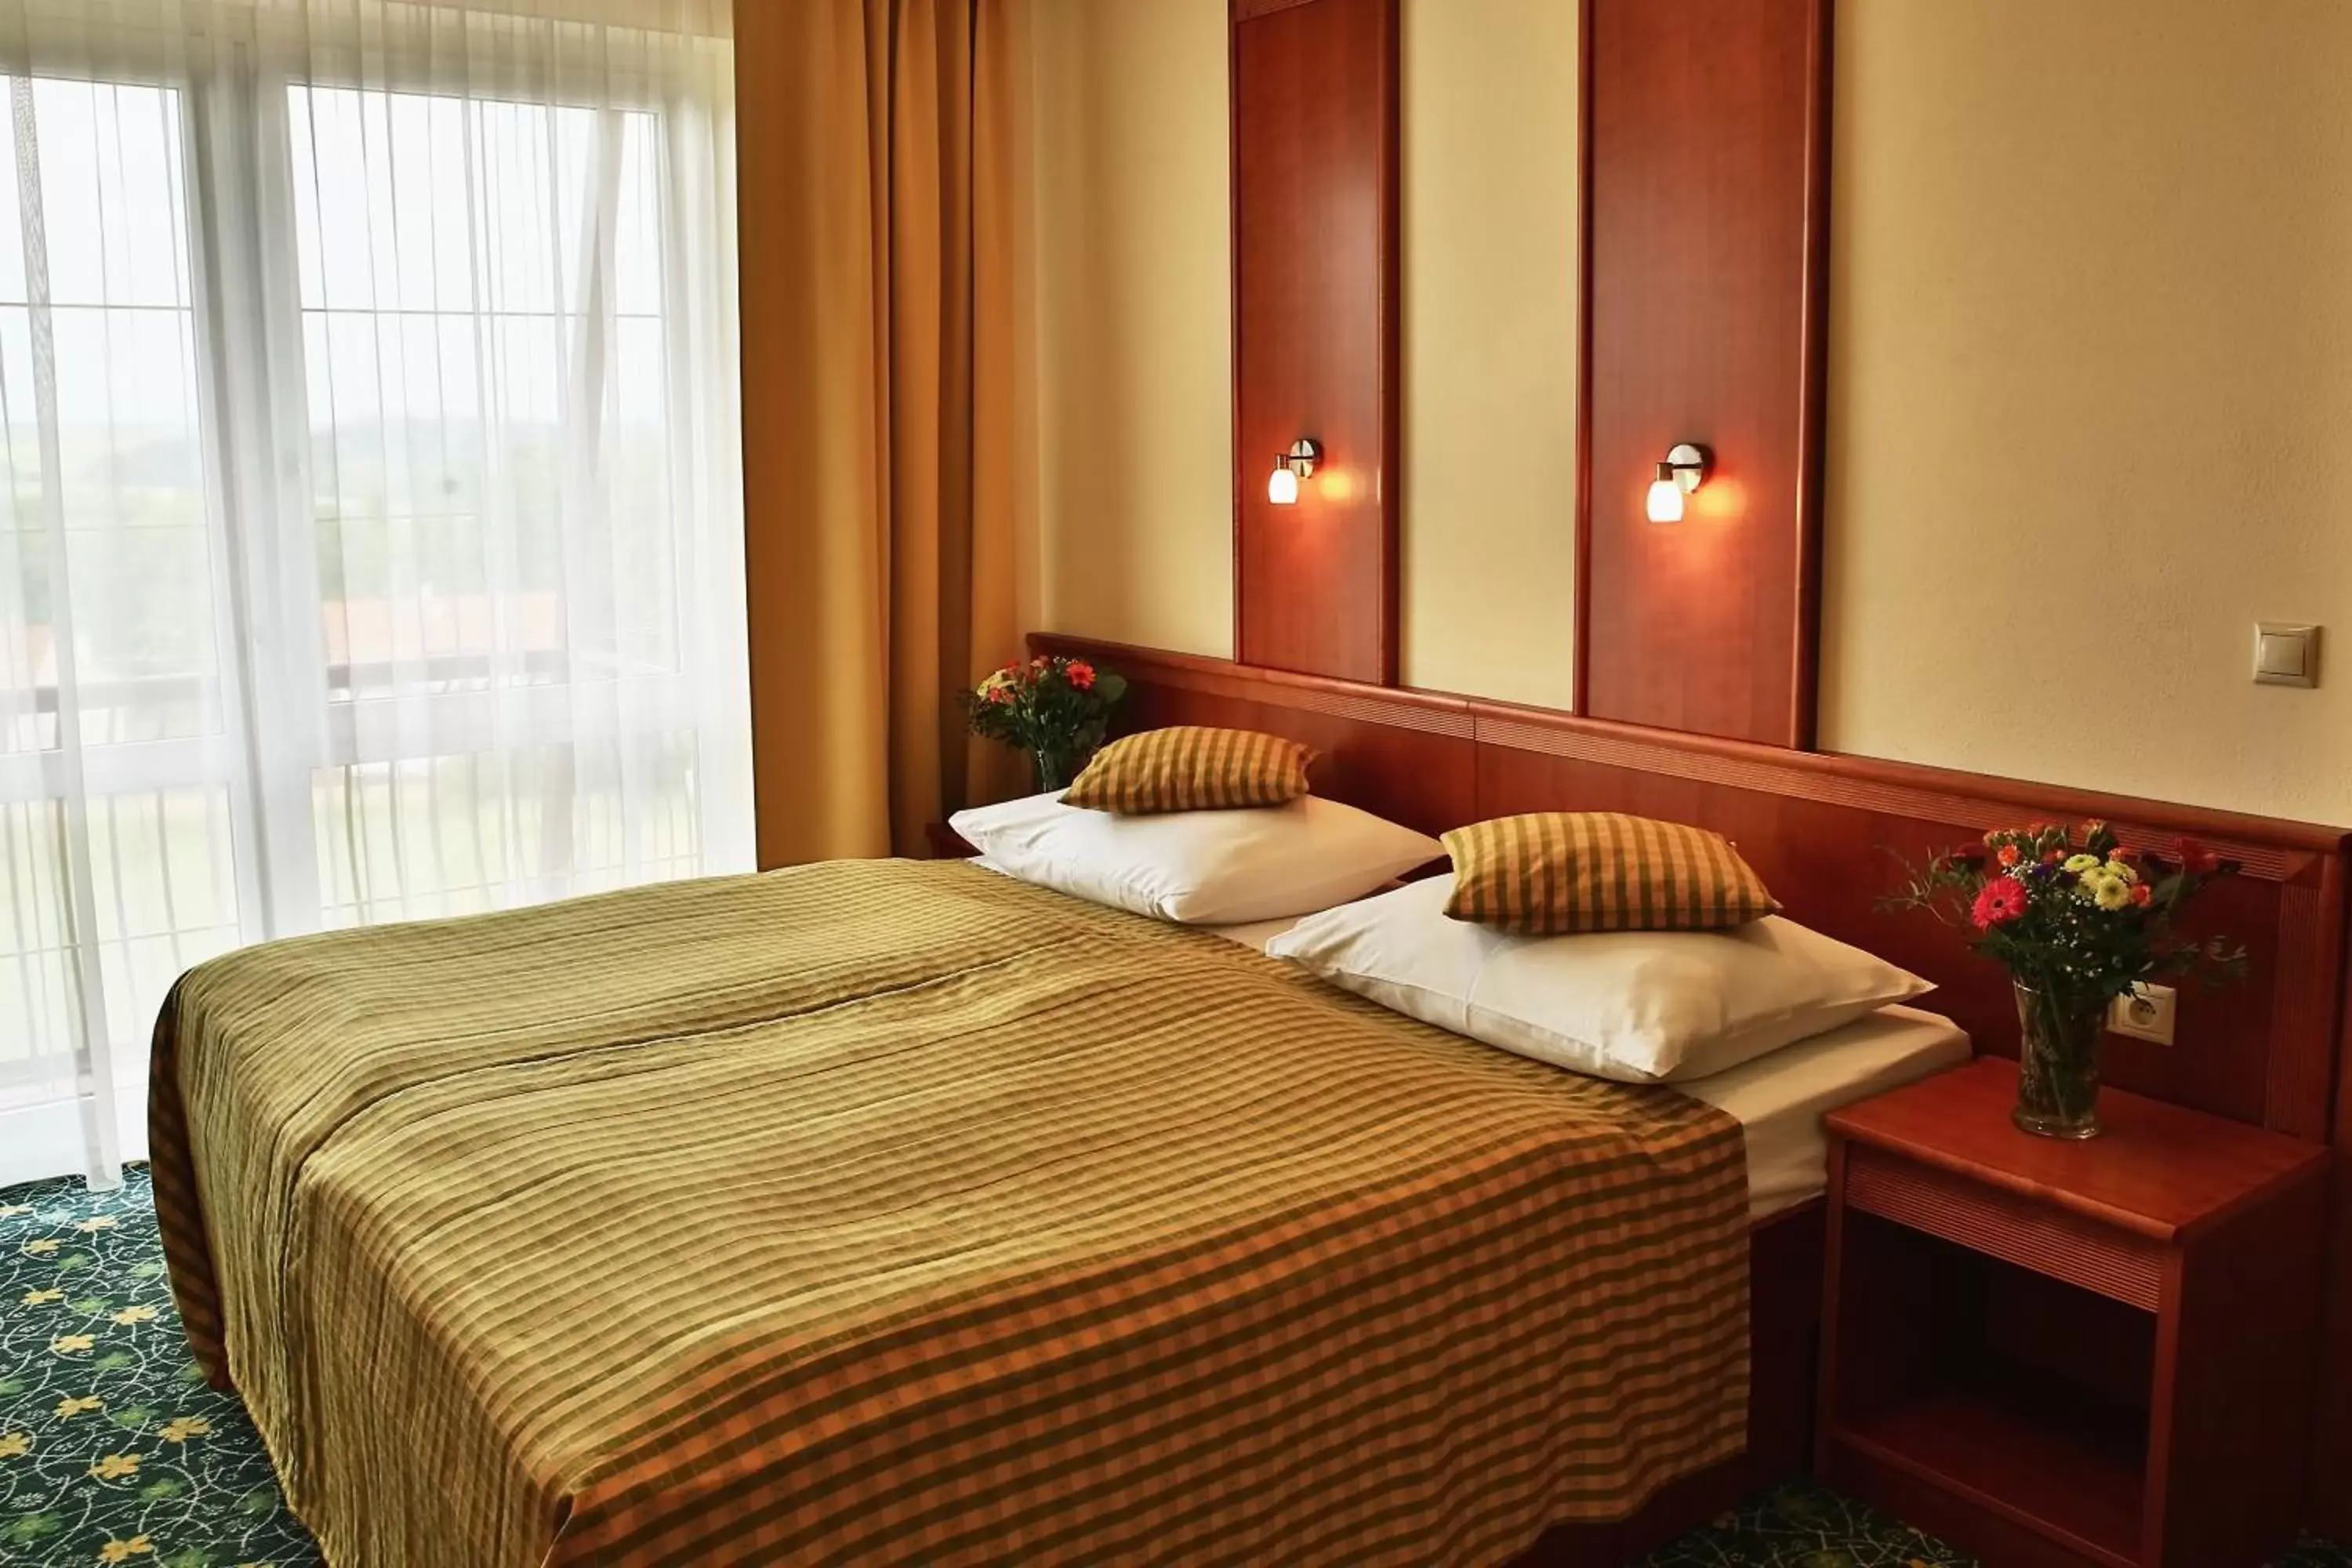 Decorative detail, Bed in PRIMAVERA Hotel & Congress centre